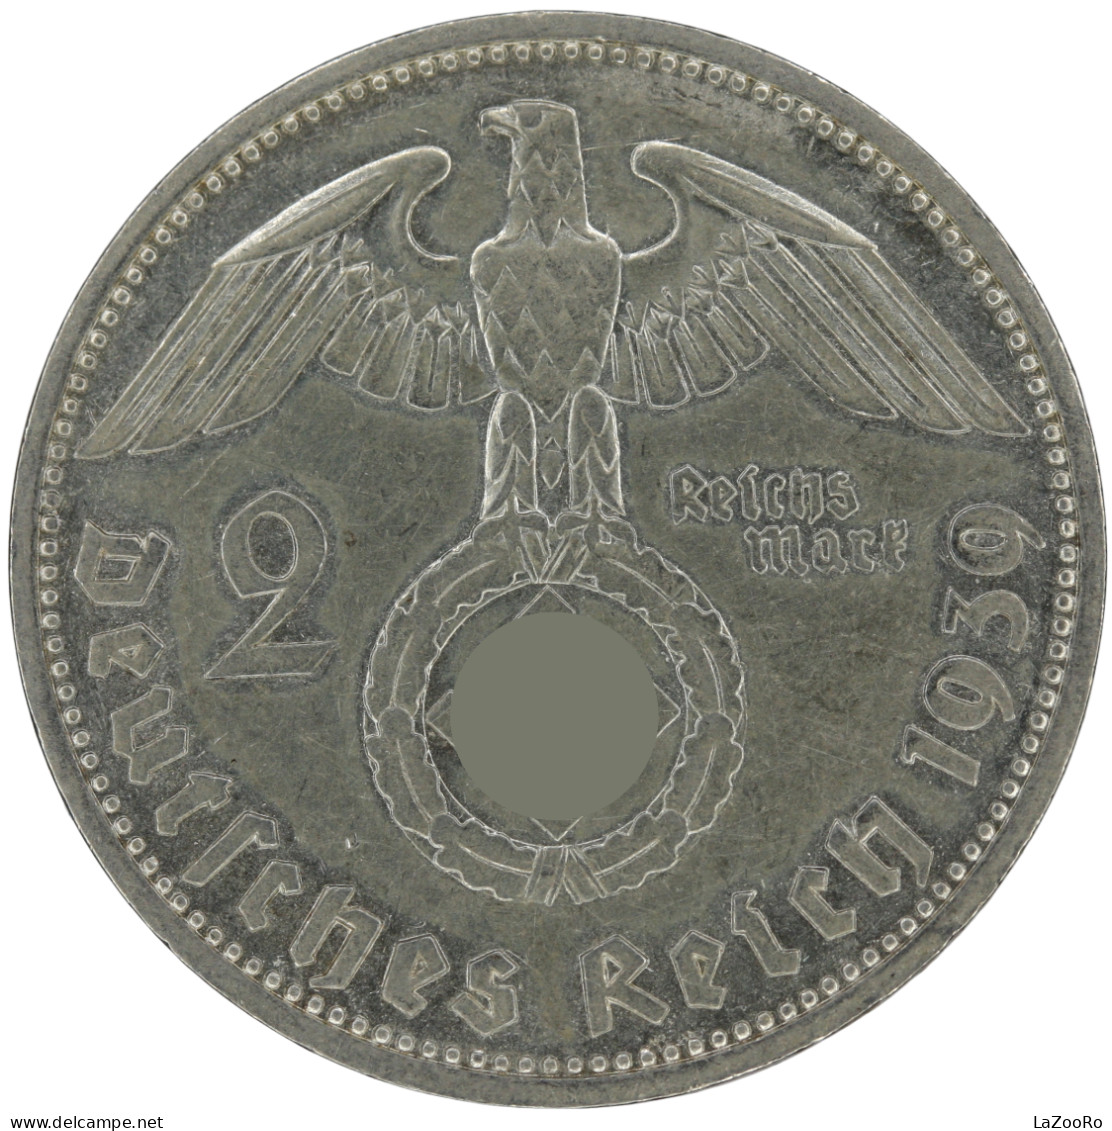 LaZooRo: Germany 2 Mark 1939 F XF / UNC - Silver - 2 Reichsmark